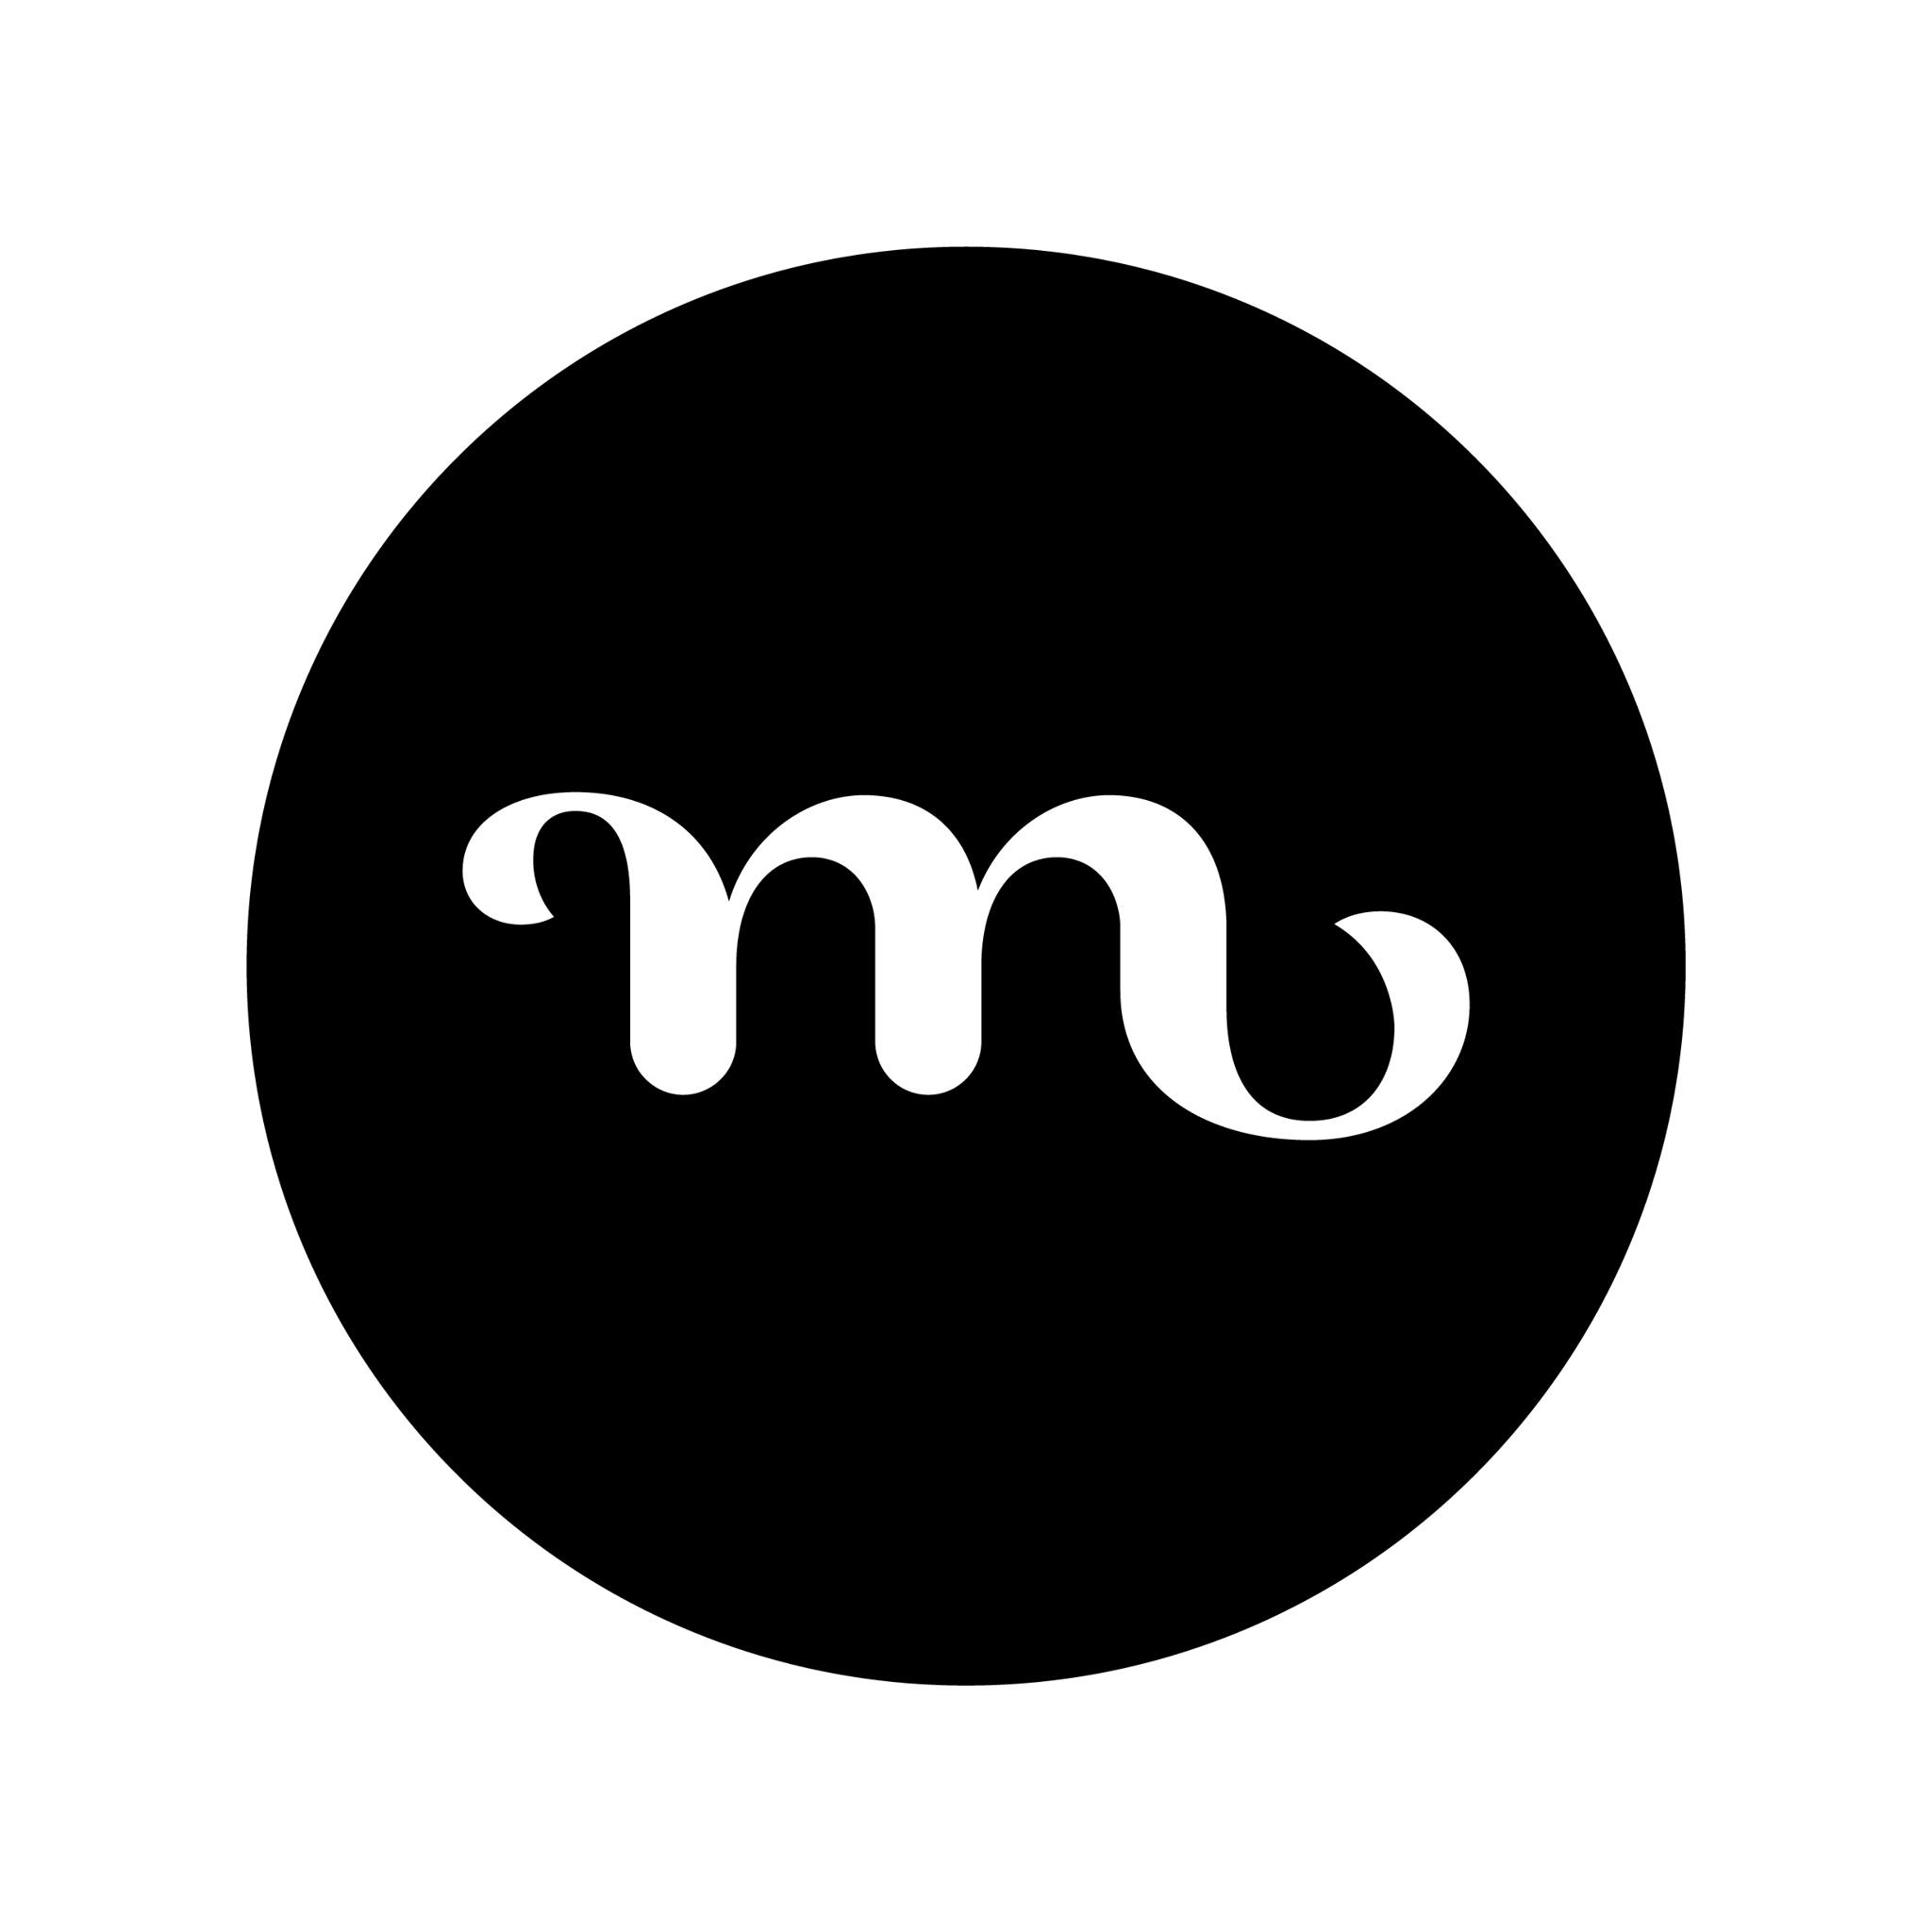 Celler masroig logo